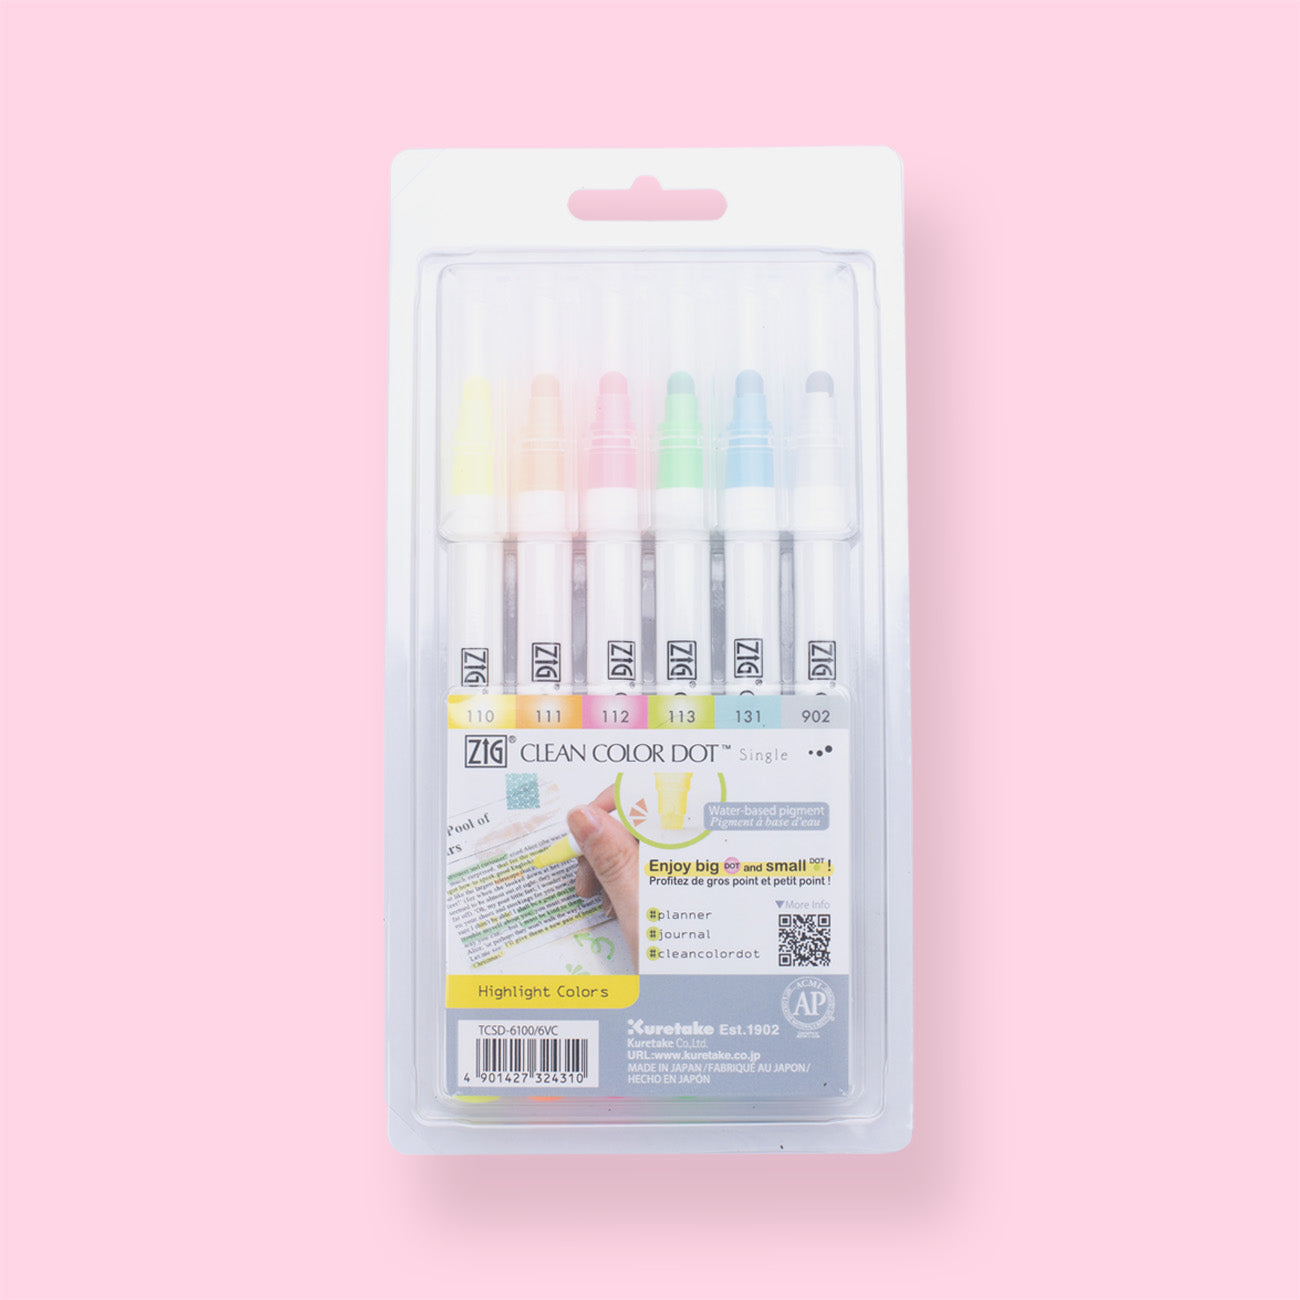 Zig Clean Color Dot Single Tip Marker - Mild Colors Set of 6